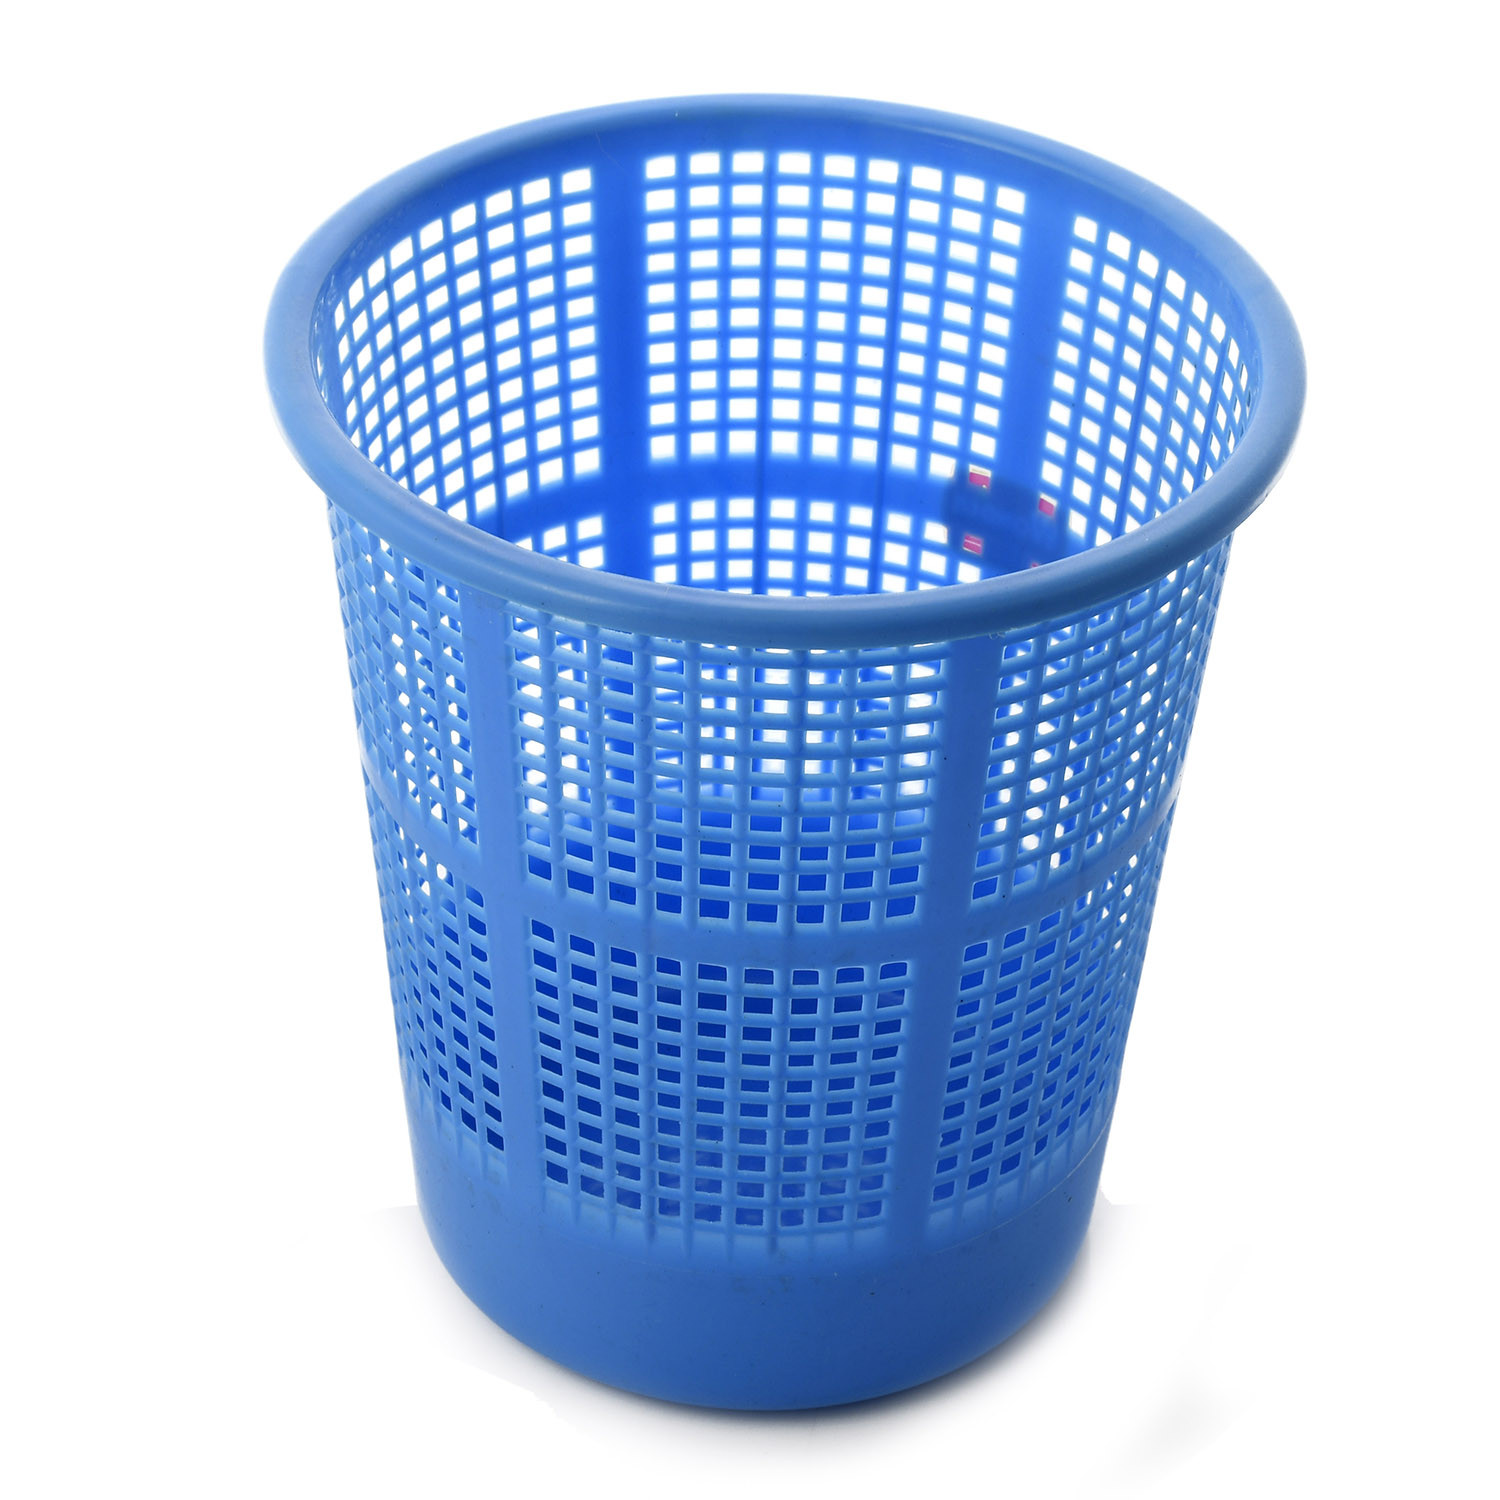 Kuber Industries Plastic Mesh Dustbin Garbage Bin for Office use, School, Bedroom,Kids Room, Home, Multi Purpose,5 Liters (Blue & Brown)